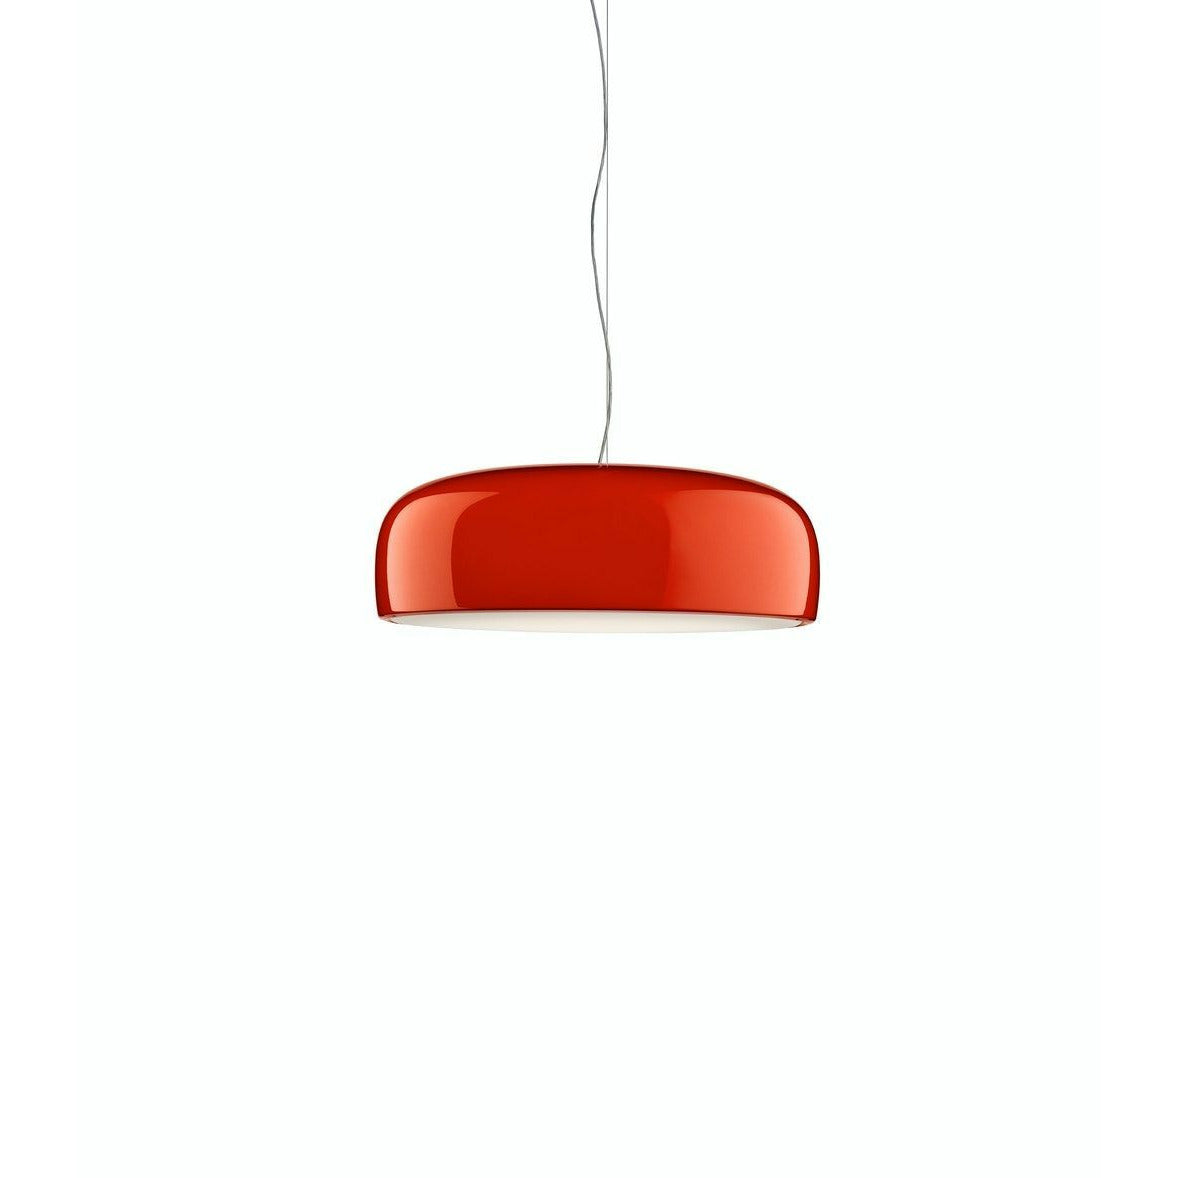 弗洛斯·史密斯菲尔德（Flos Smithfield）的Pro吊灯，红色